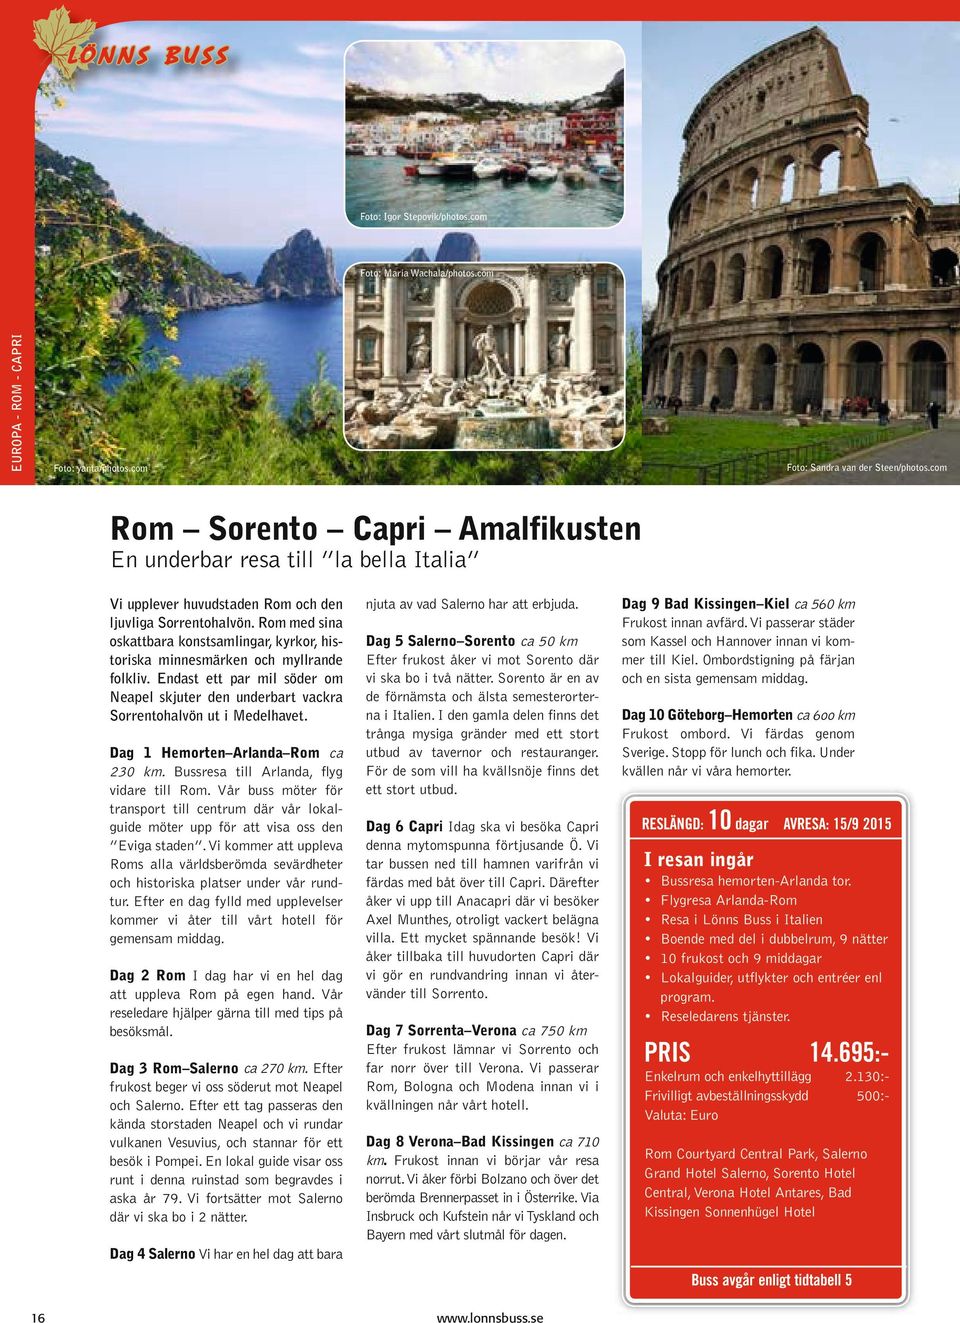 Rom med sina oskattbara konstsamlingar, kyrkor, historiska minnesmärken och myllrande folkliv. Endast ett par mil söder om Neapel skjuter den underbart vackra Sorrentohalvön ut i Medelhavet.